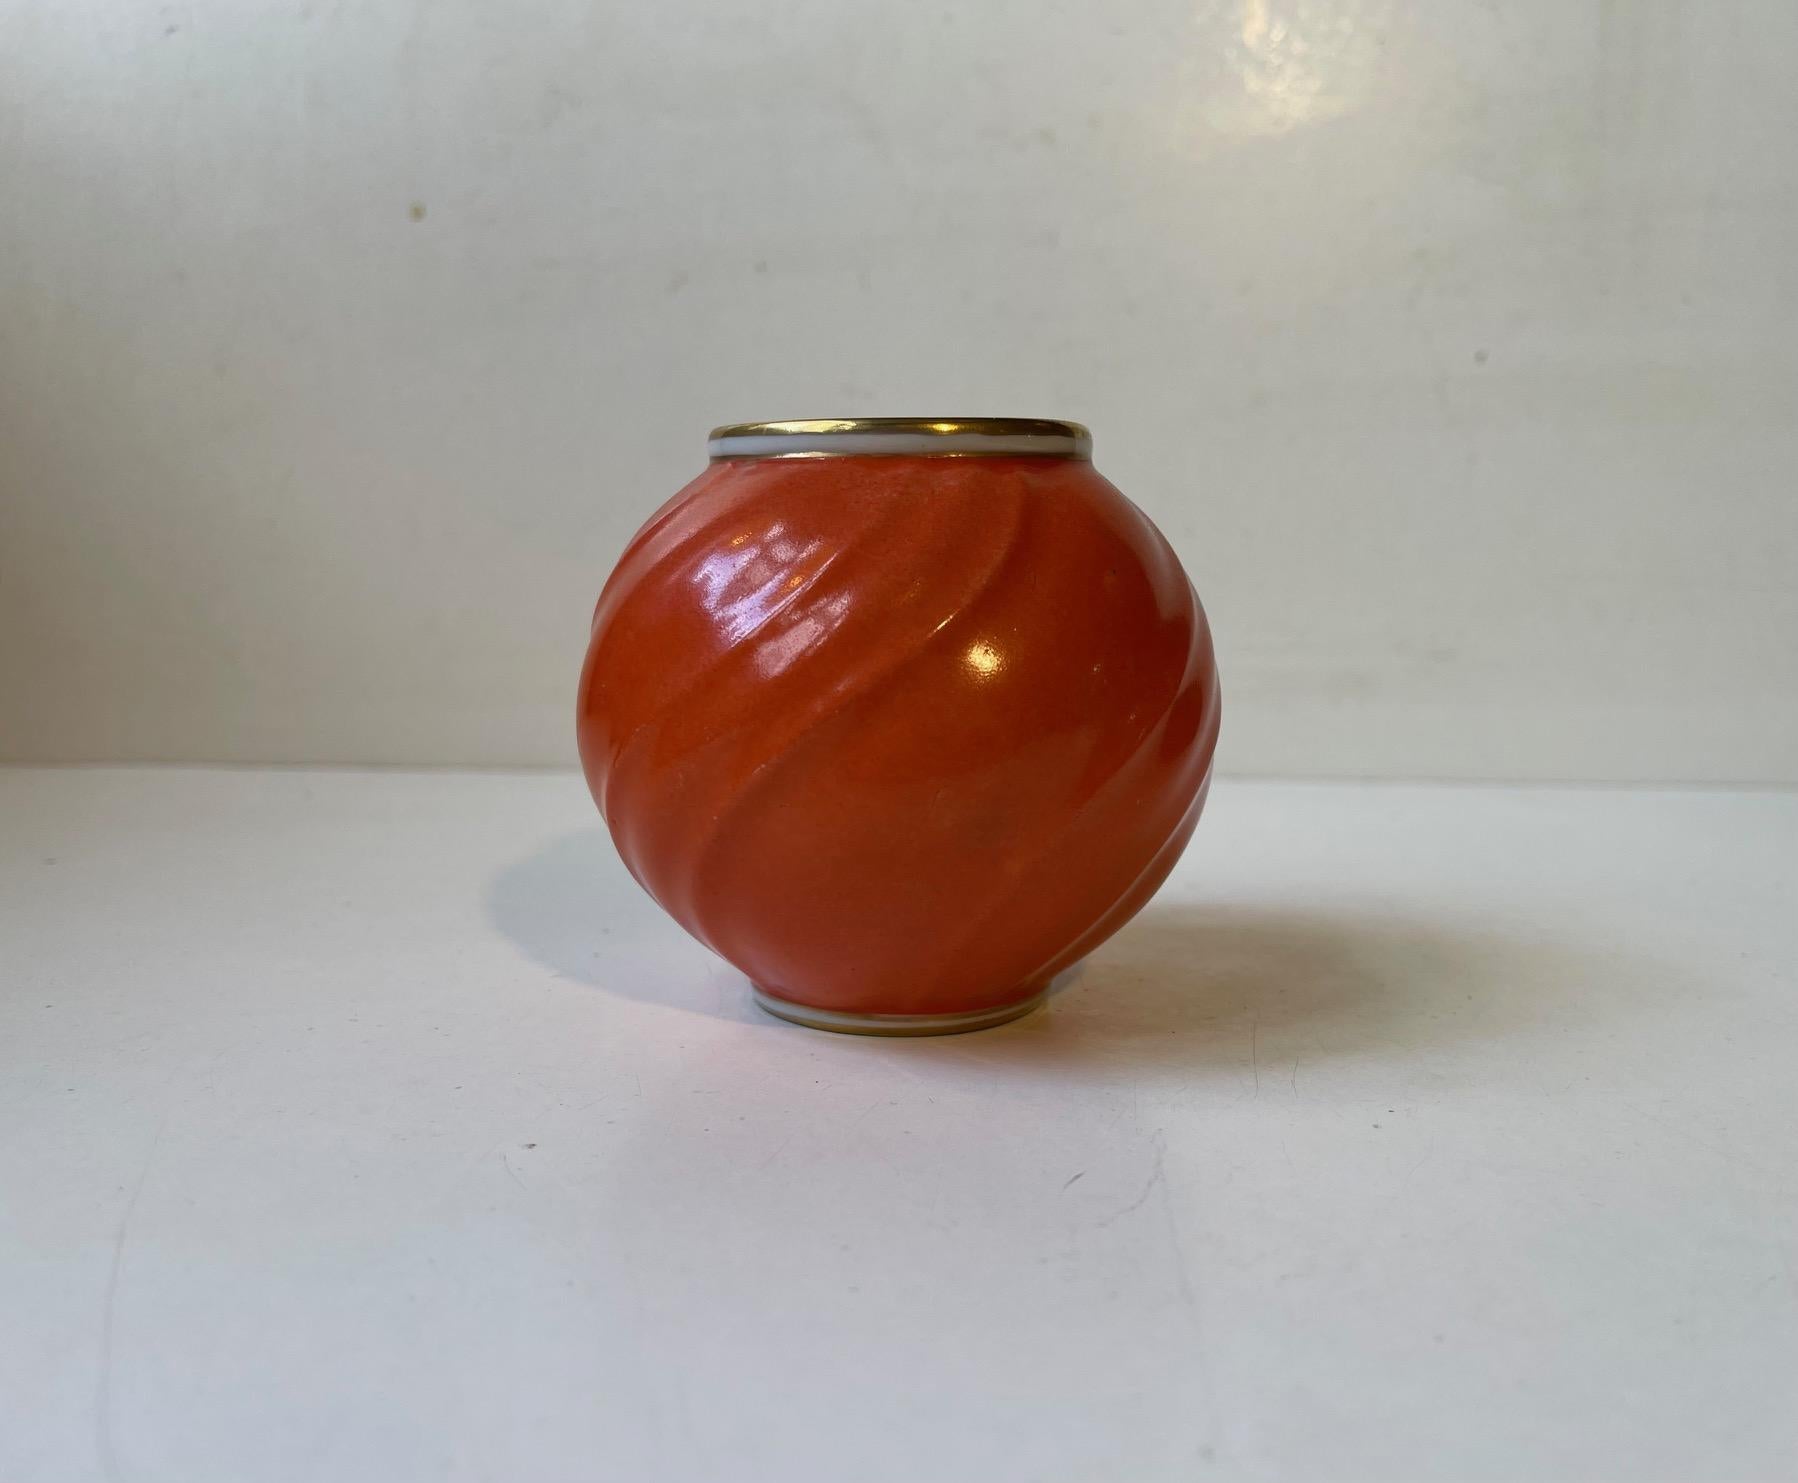 Korallenrot/orange glasierte kugelförmige Porzellanvase mit Wirbeln. Hergestellt und entworfen von Lyngby Porcelæn in Dänemark in den 1930er Jahren. Vollständig auf dem Sockel markiert. Abmessungen: H: 8,5 cm, T: 9 cm.